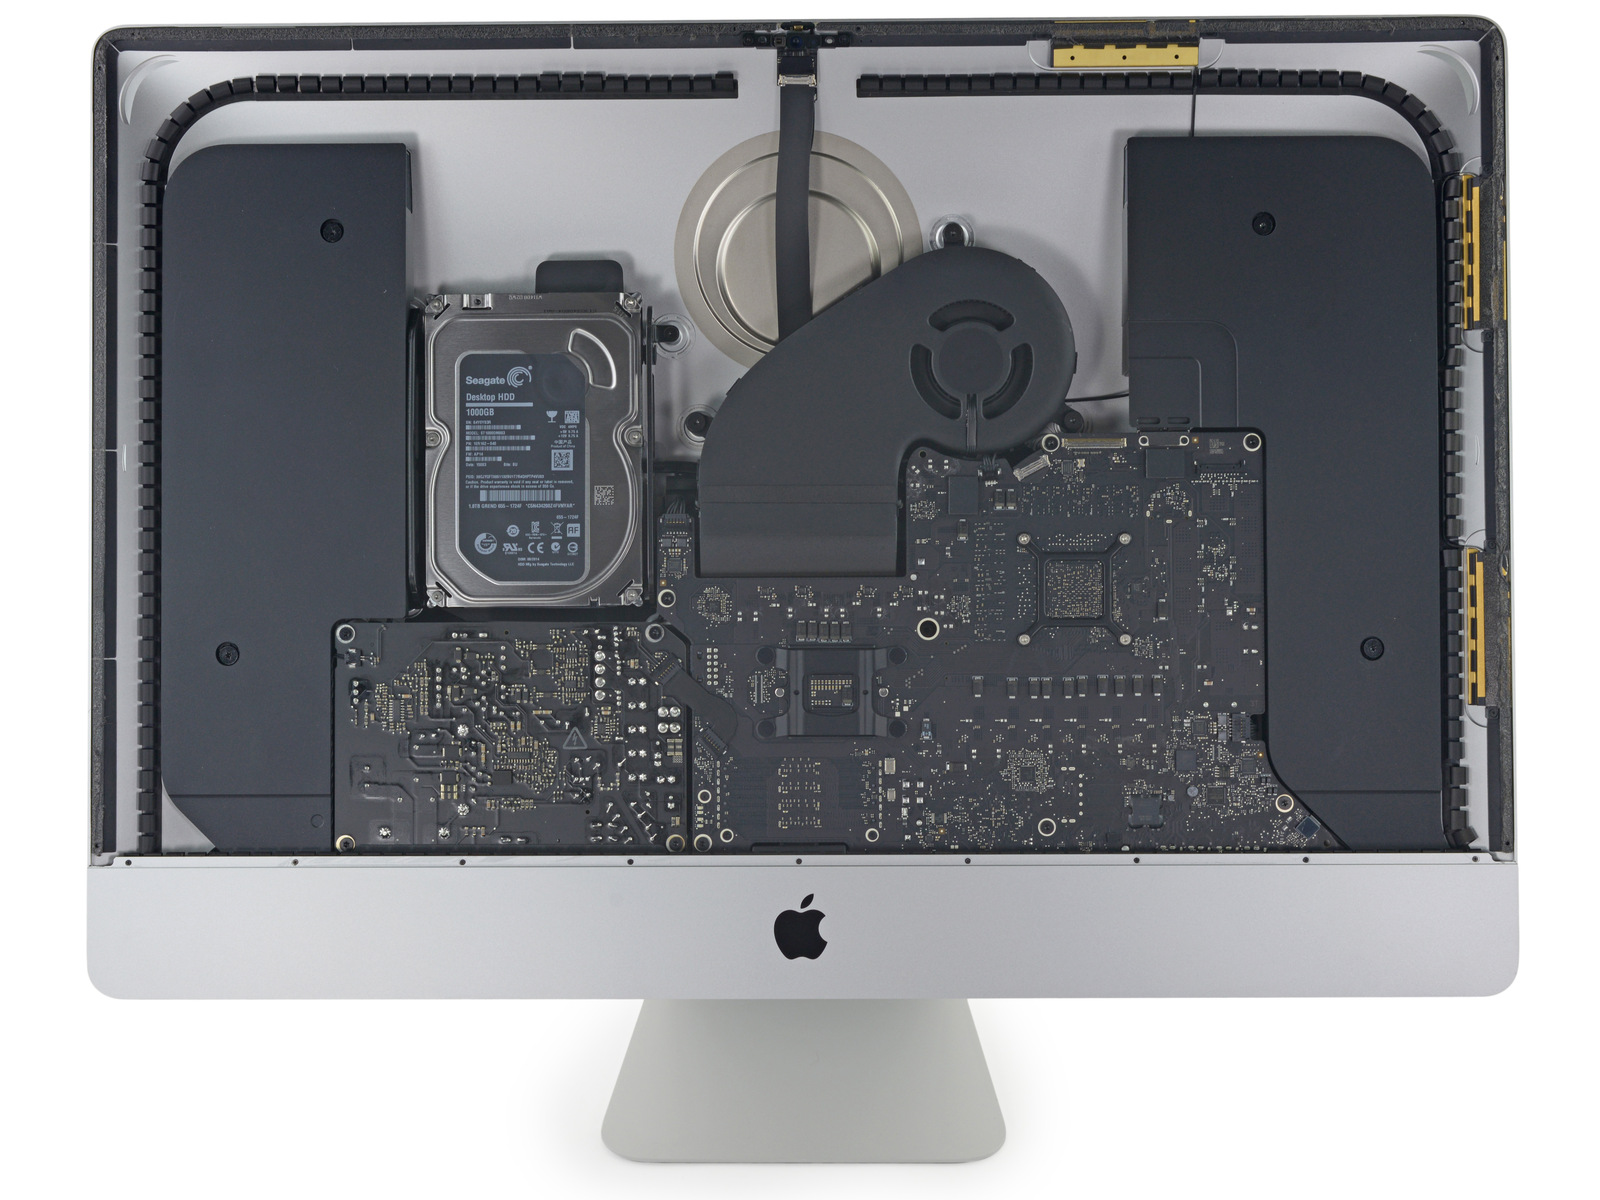 Immagine pubblicata in relazione al seguente contenuto: Le foto di un iMac di Apple con display Retina 5K disassemblato | Nome immagine: news21797_iMac-Intel-27-inch_Retina-5K_1.jpg